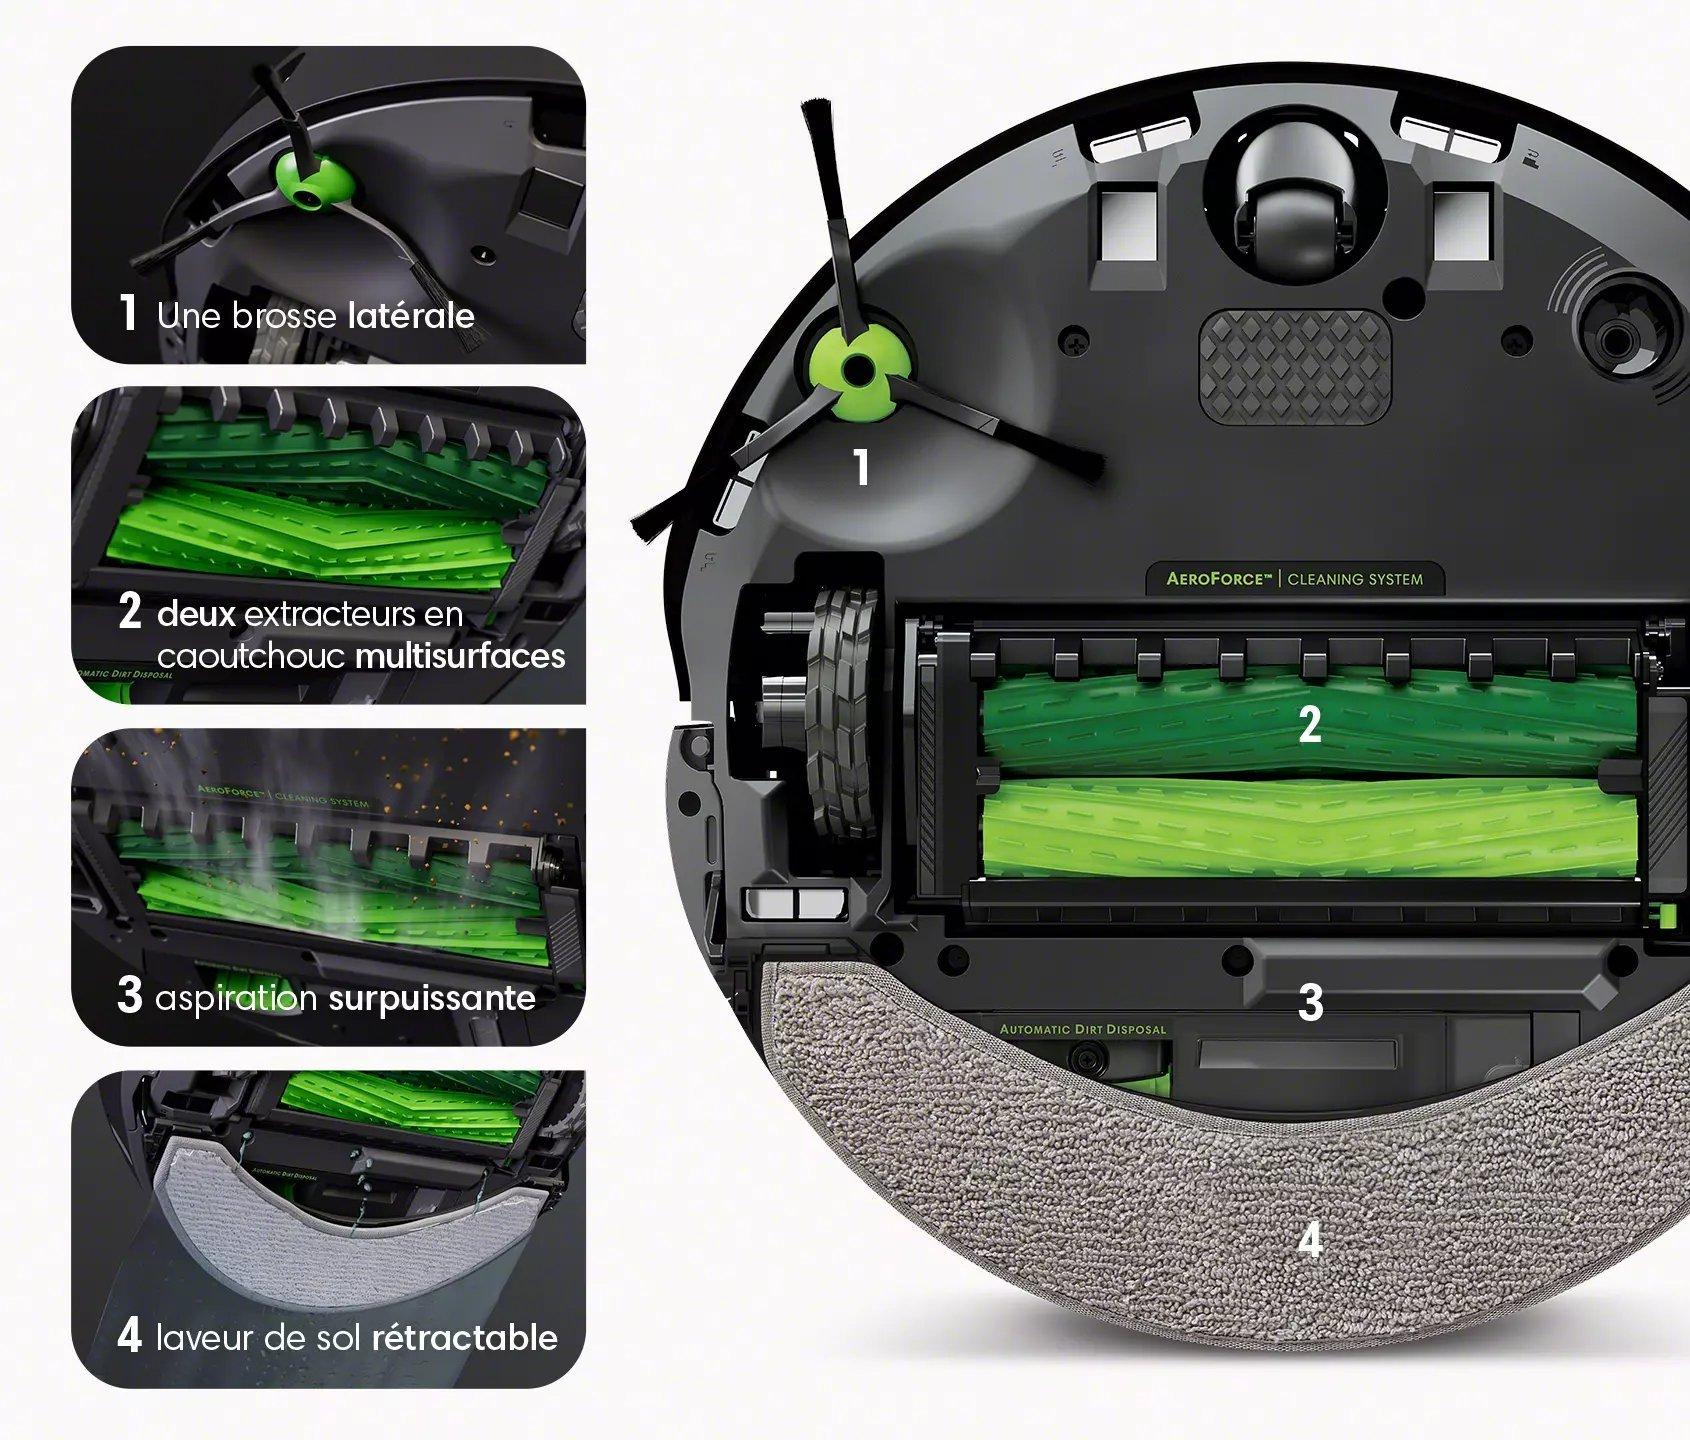 Roomba J7+ : Test de l'aspirateur autonome ultime de iRobot